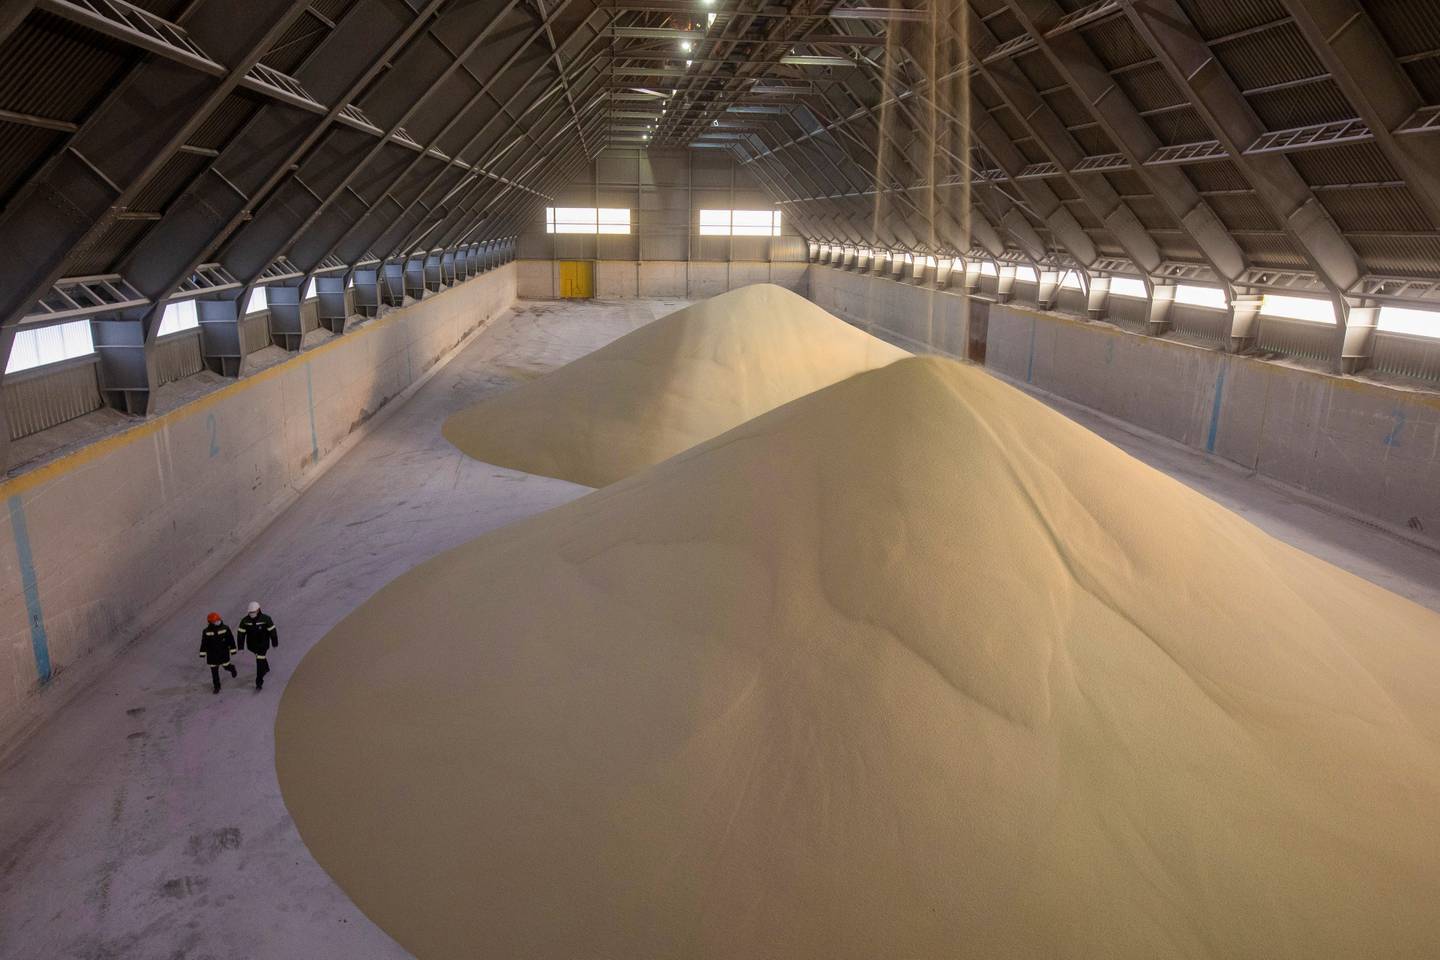 Pilas de gránulos de fertilizante fosfatado en un almacén de una planta de fertilizantes en Cherepovets, Rusia.Fuente: Bloombergdfd